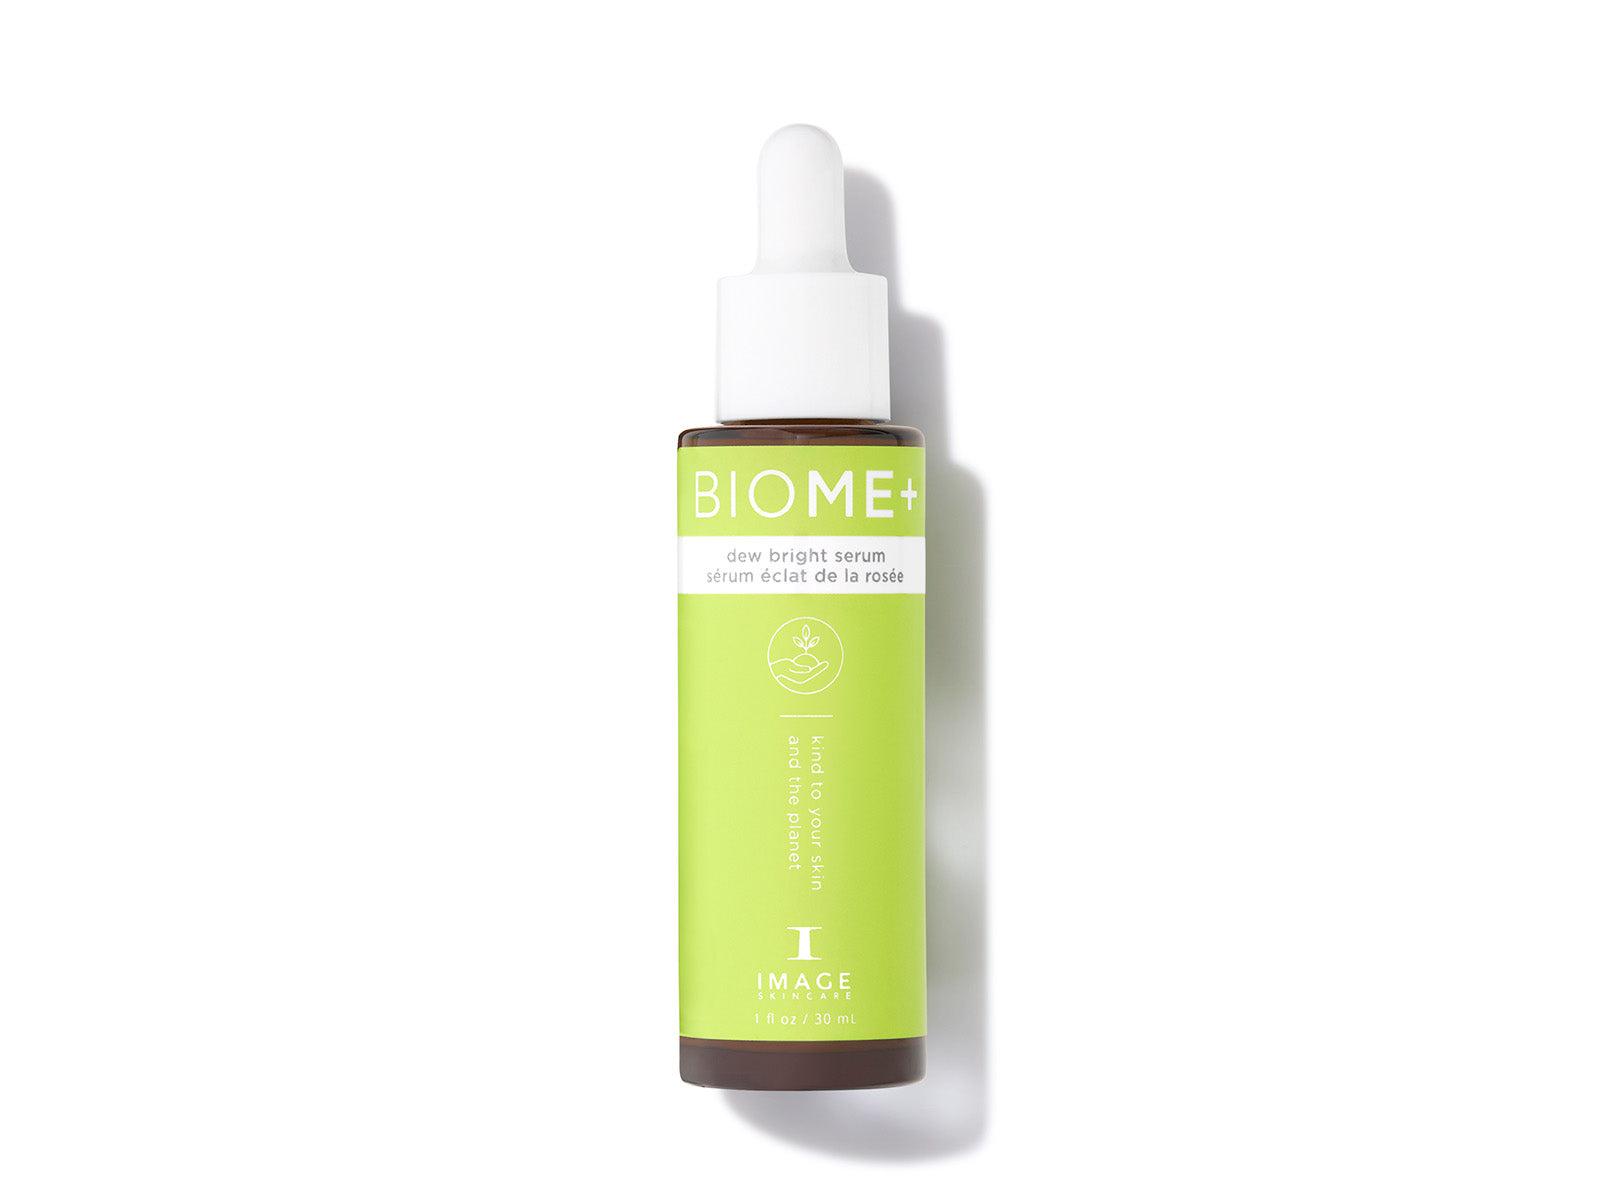 Image Skincare BIOME+  Dew Bright Serum